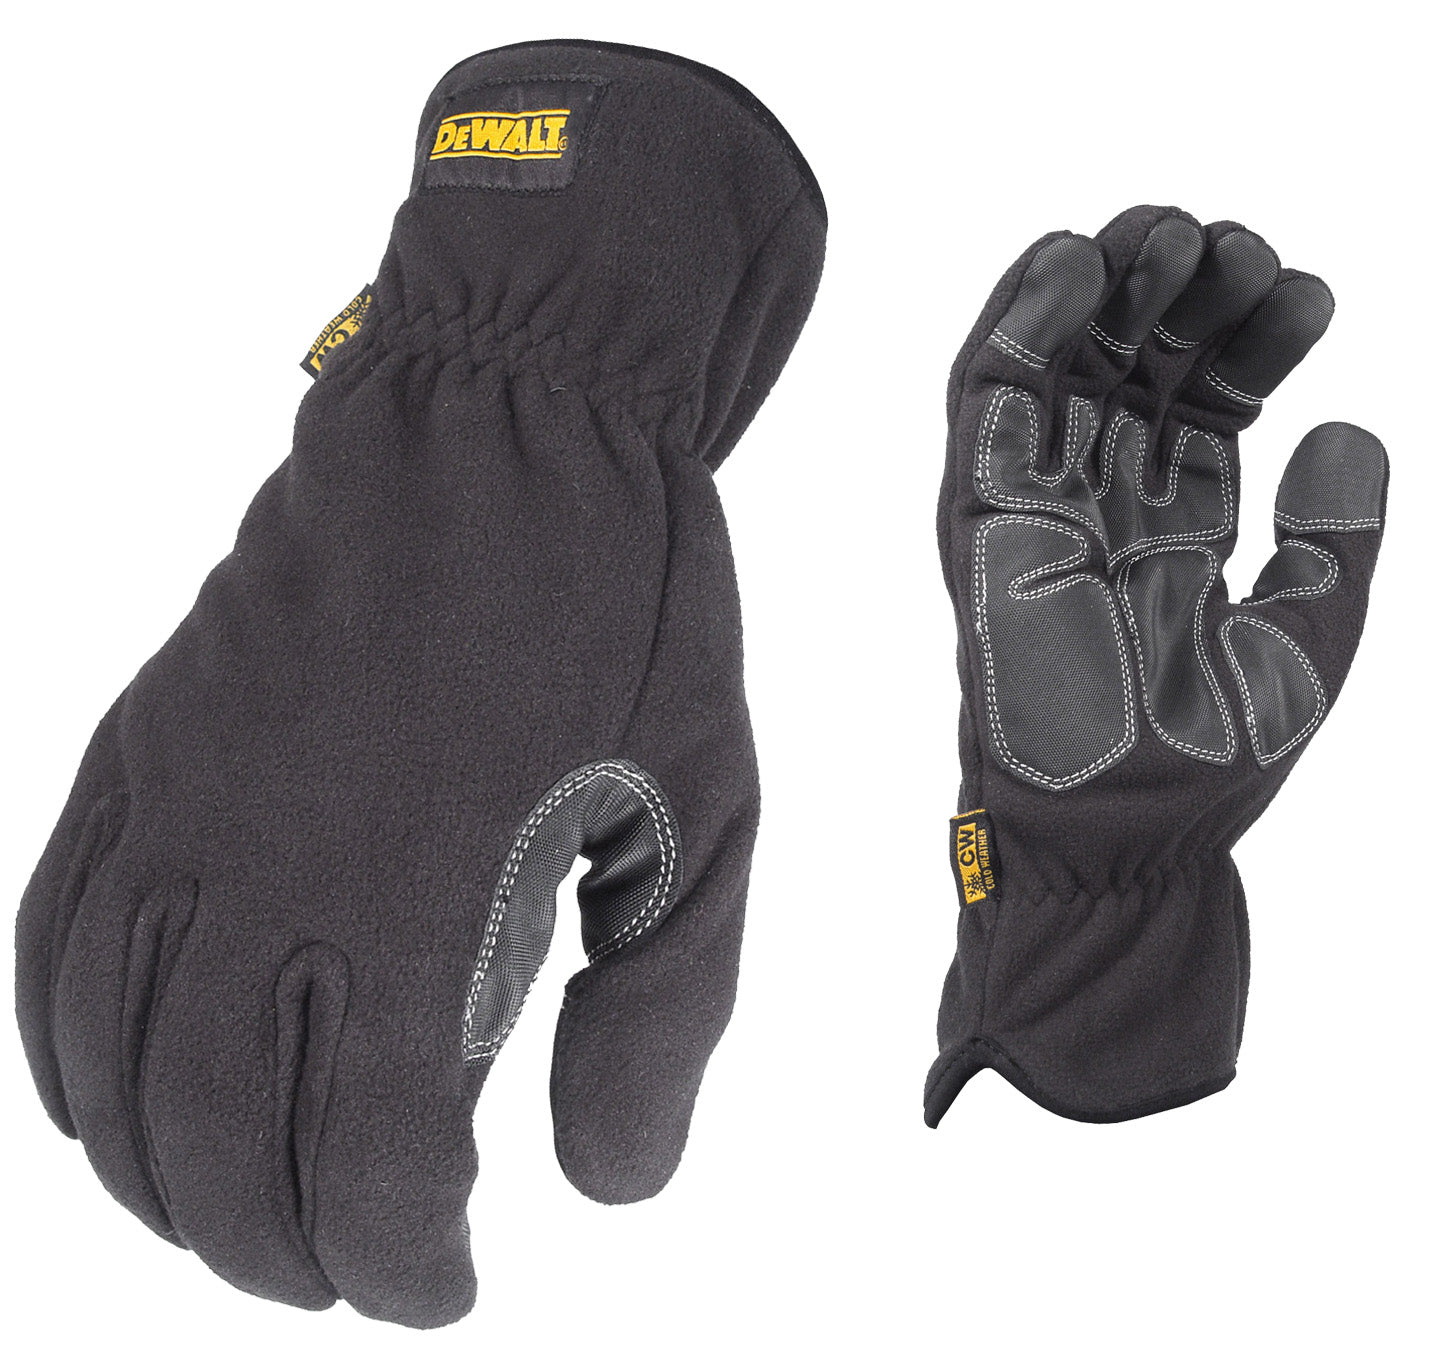 DEWALT DPG740 Fleece Mild Condition Cold Weather Work Glove